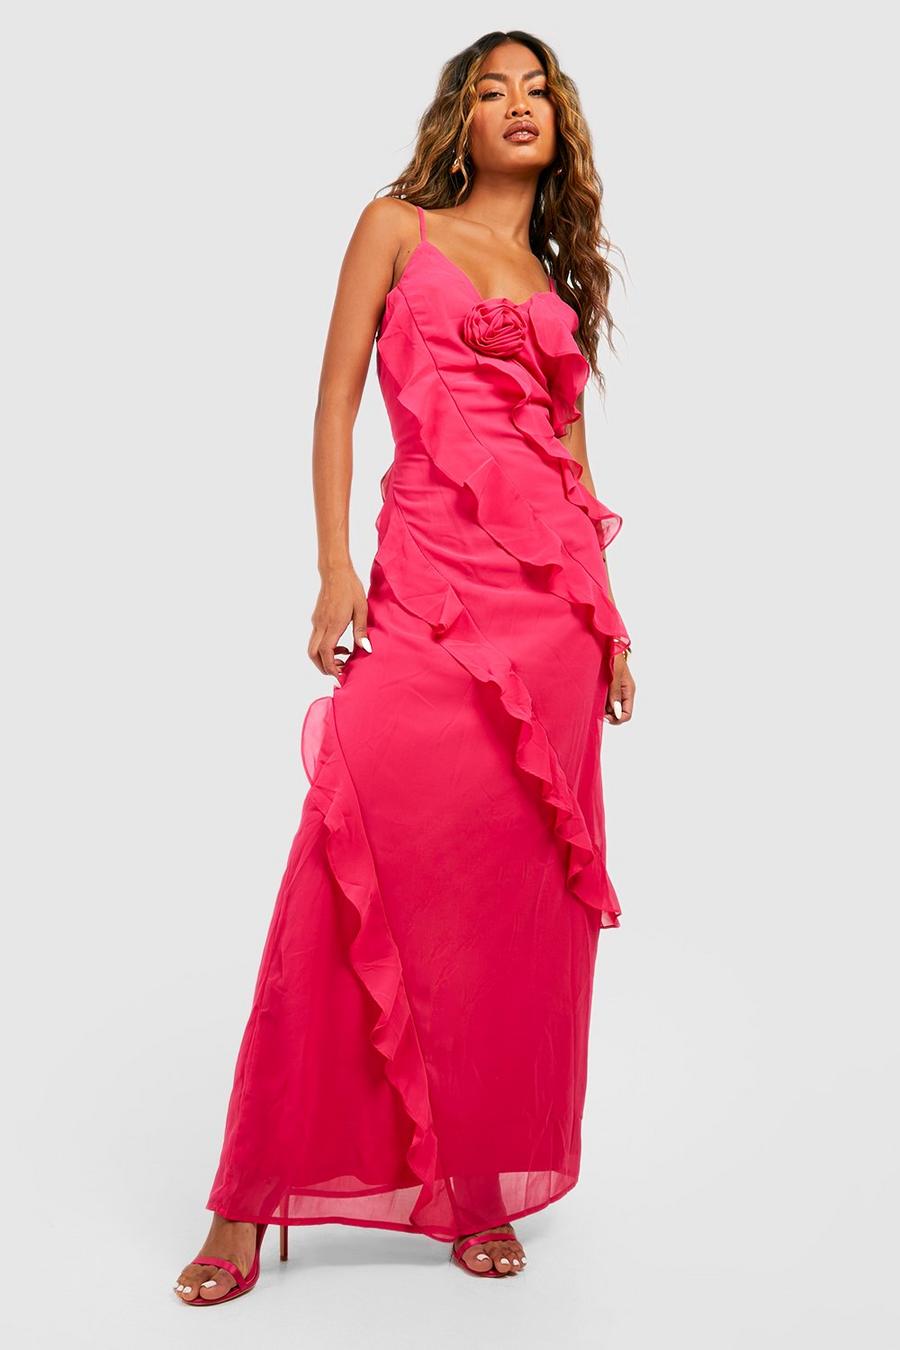 Hot Pink Ruffled Maxi Dress | SilkFred US